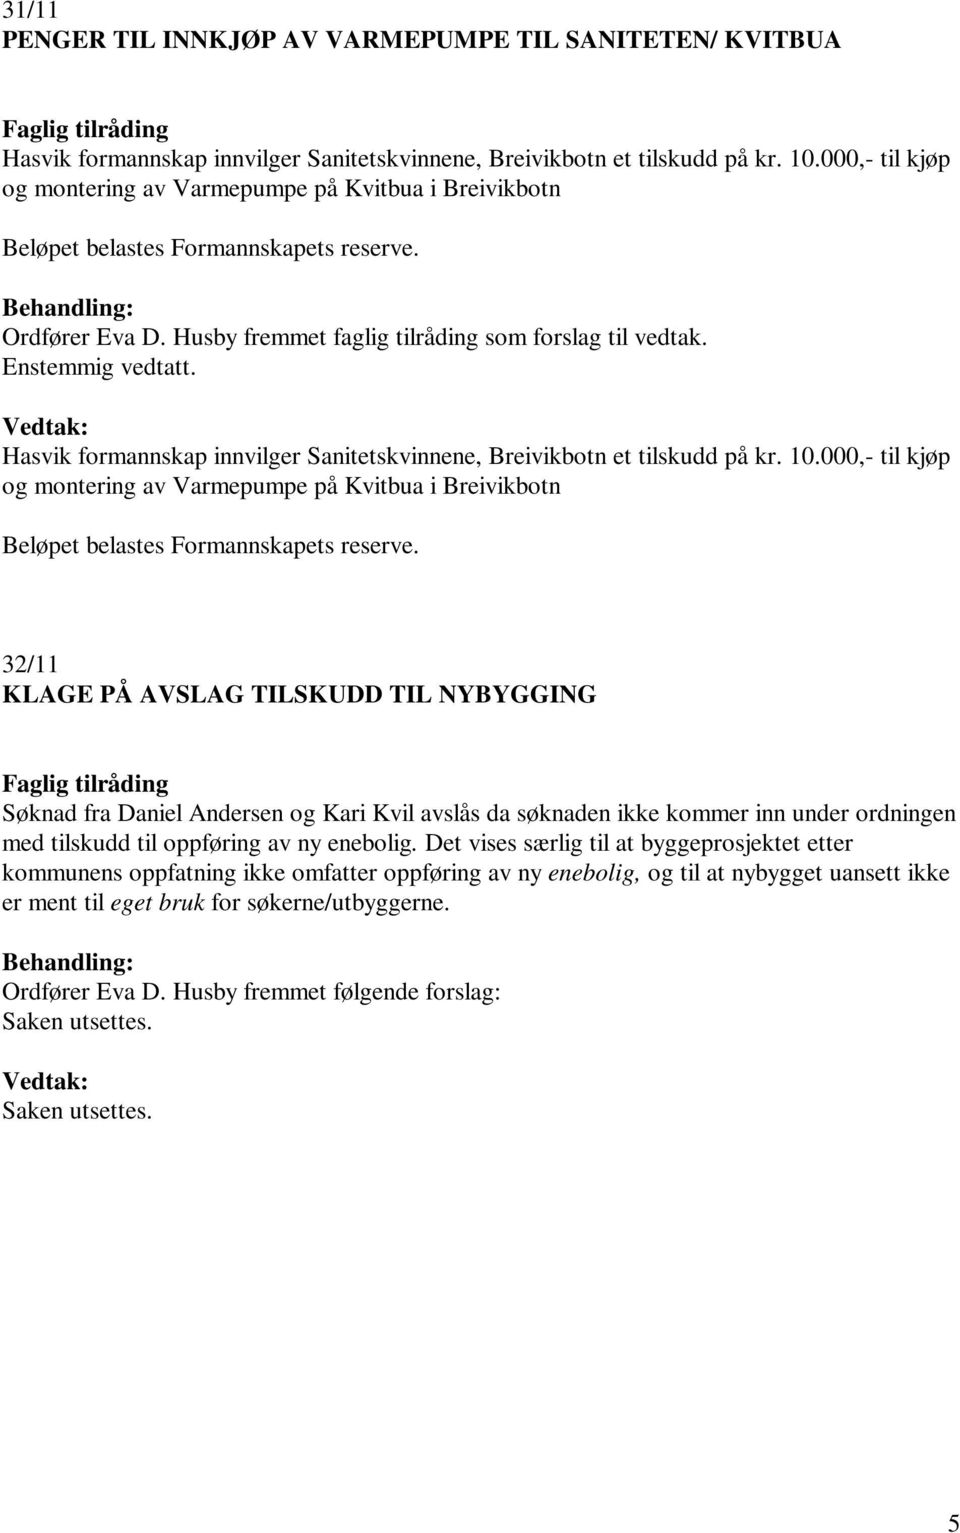 Hasvik formannskap innvilger Sanitetskvinnene, Breivikbotn et tilskudd på kr. 10.000,- til kjøp og montering av Varmepumpe på Kvitbua i Breivikbotn Beløpet belastes Formannskapets reserve.